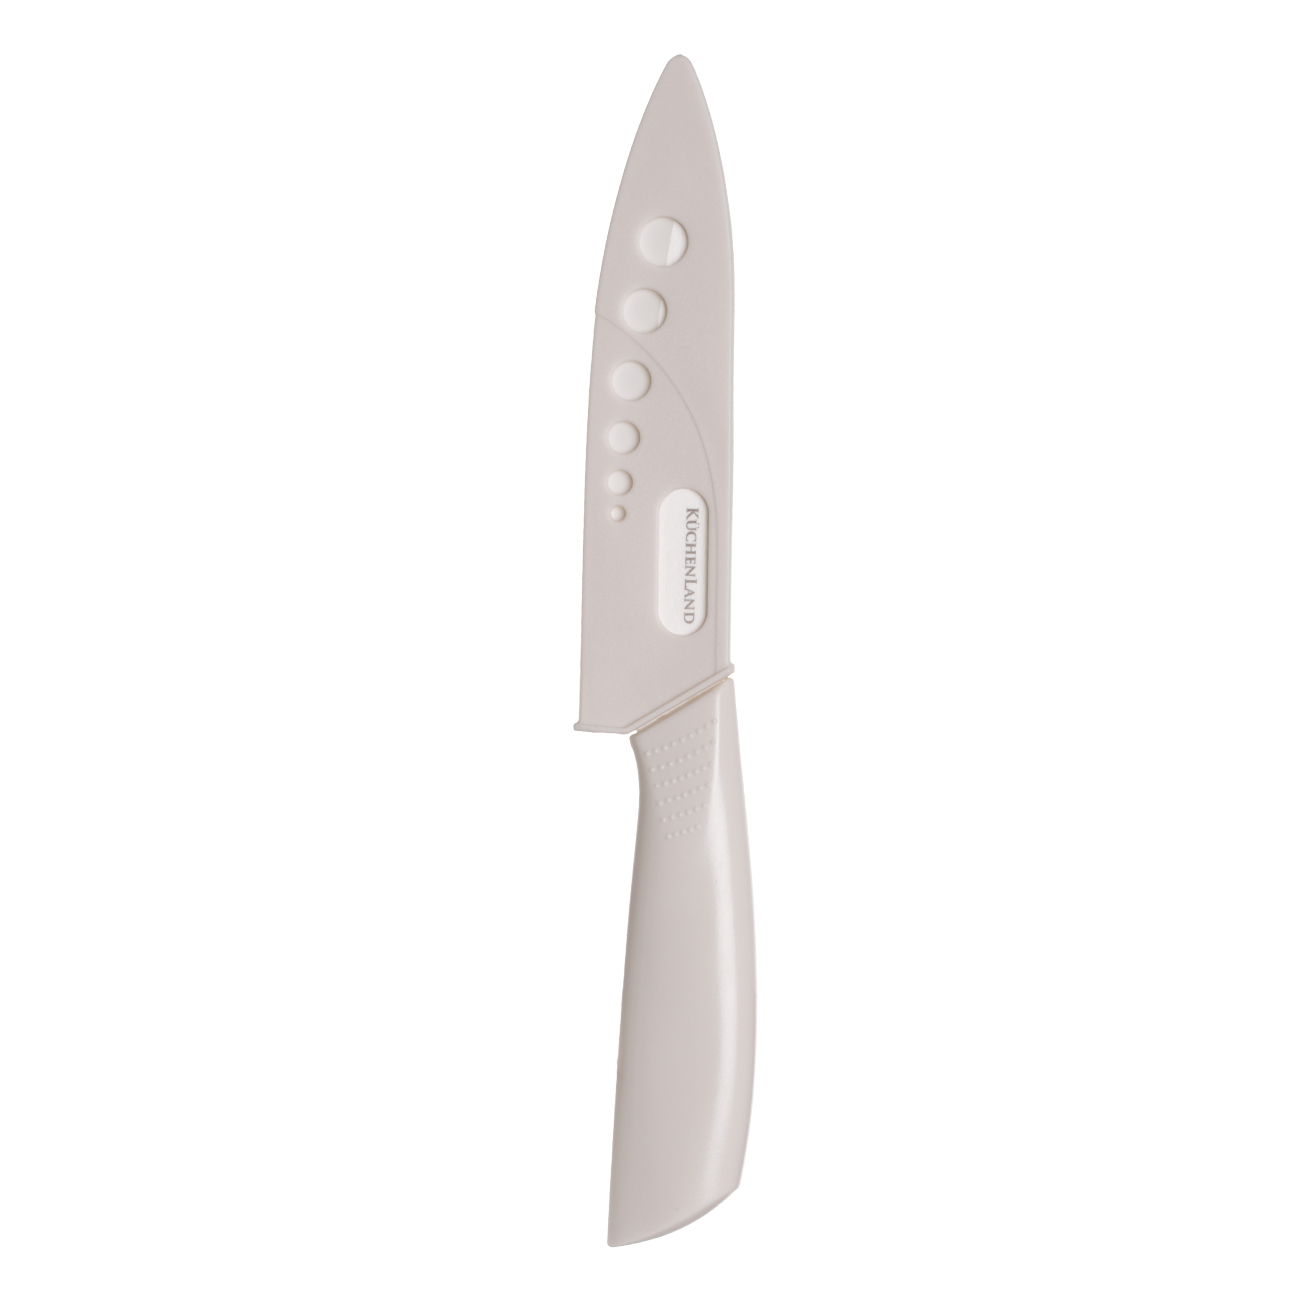 Нож для чистки овощей, 10 см, с чехлом, керамика/пластик, молочный, Regular